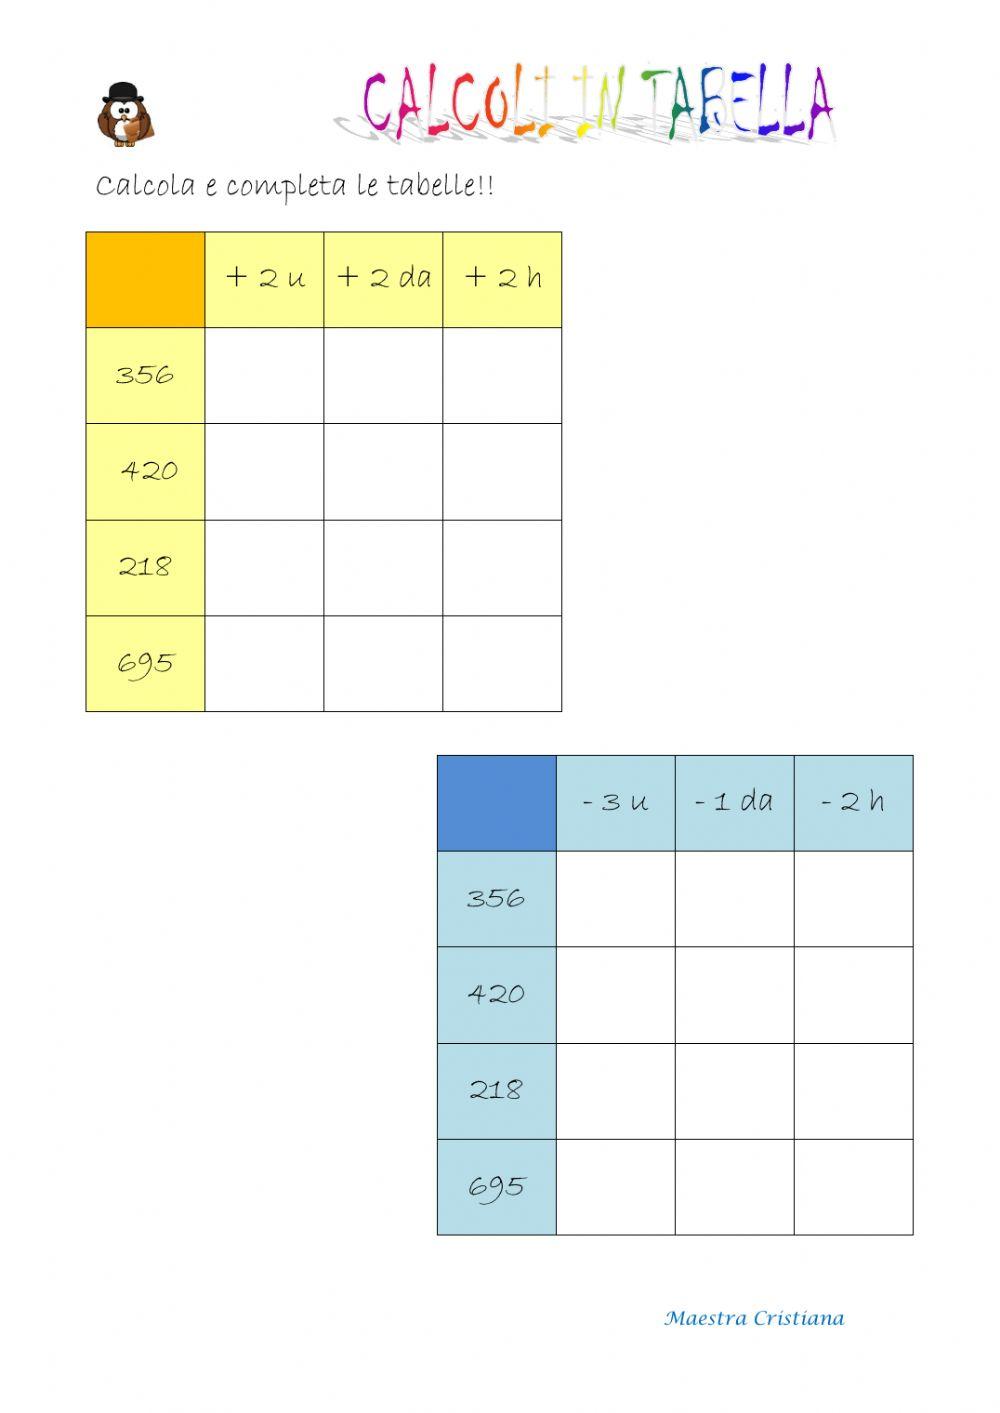 Calcoli in tabella